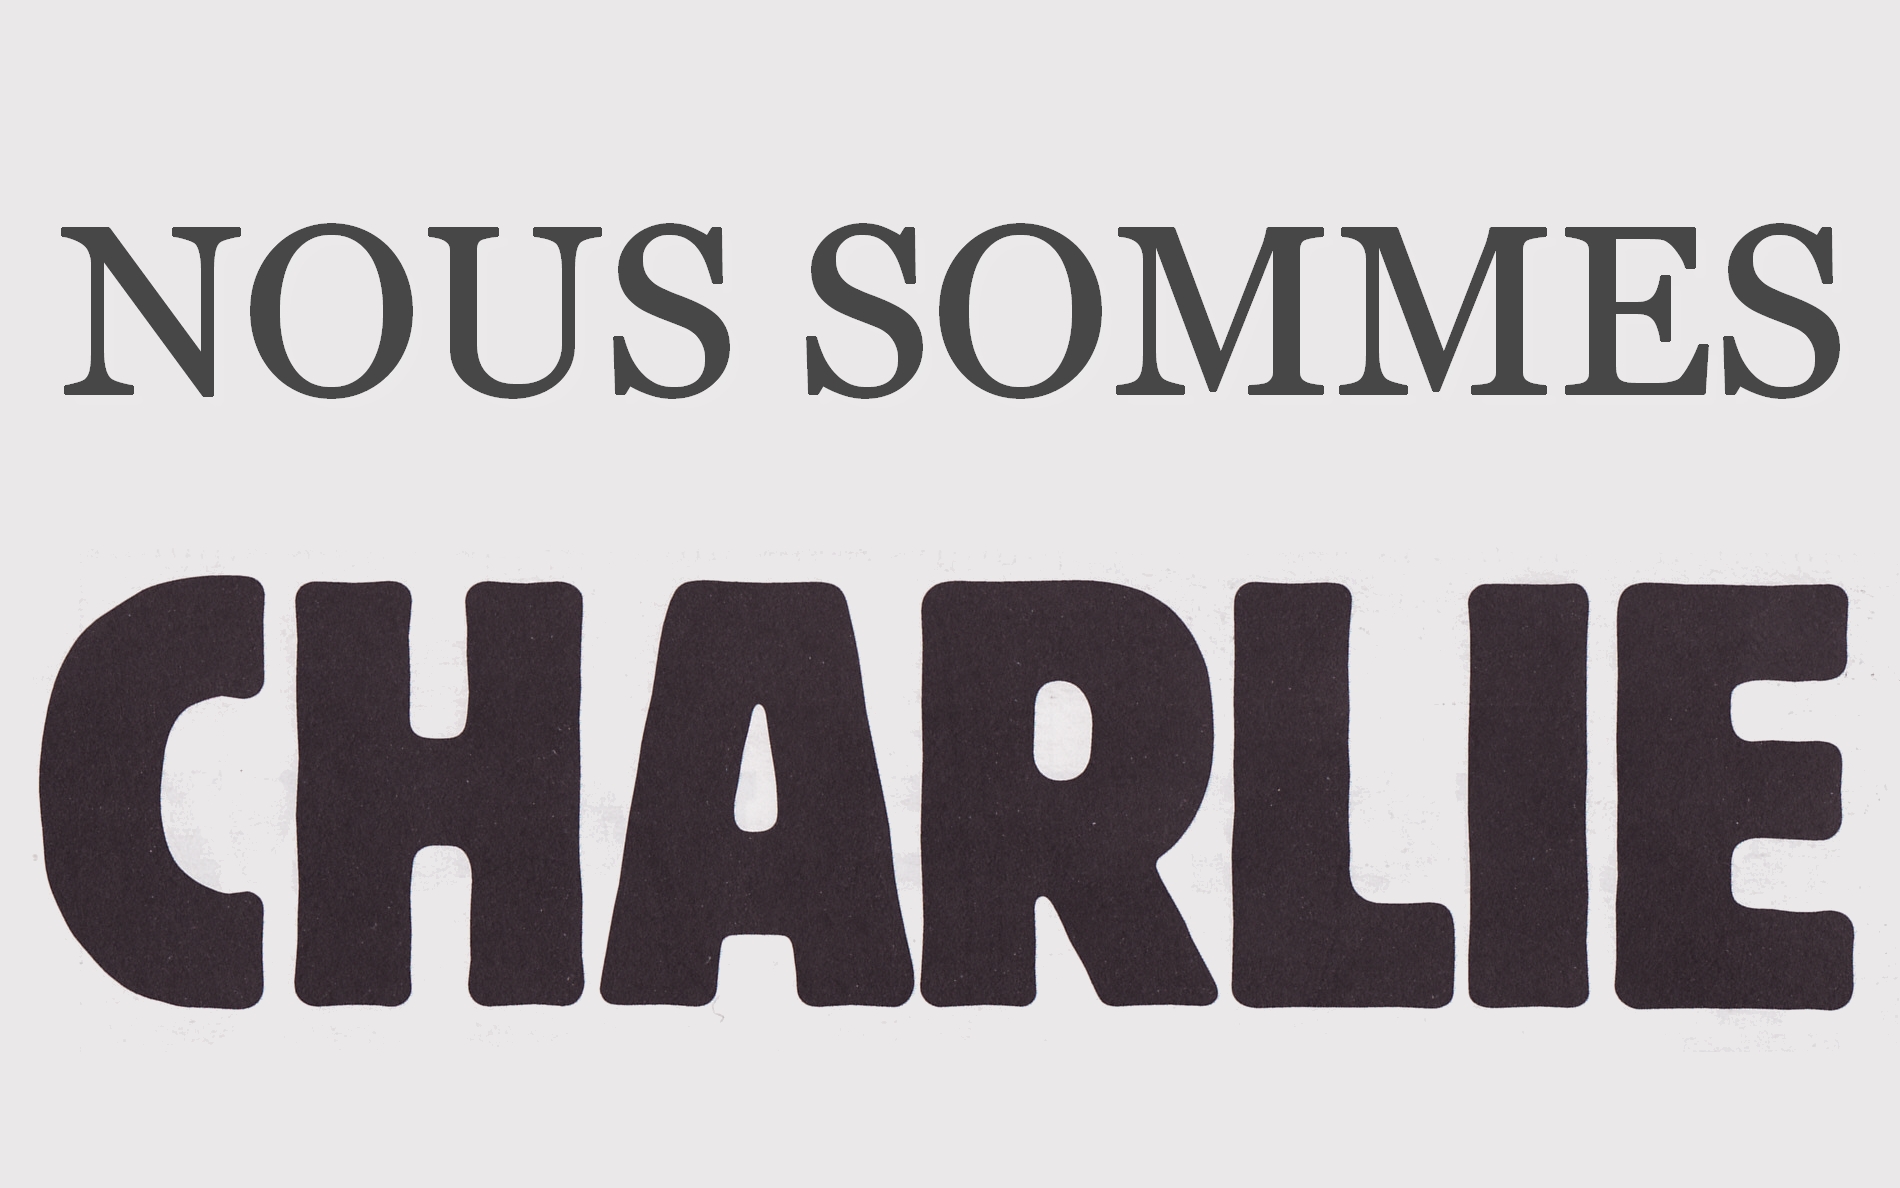 Nous sommes Charlie-Hebde - La Déviation